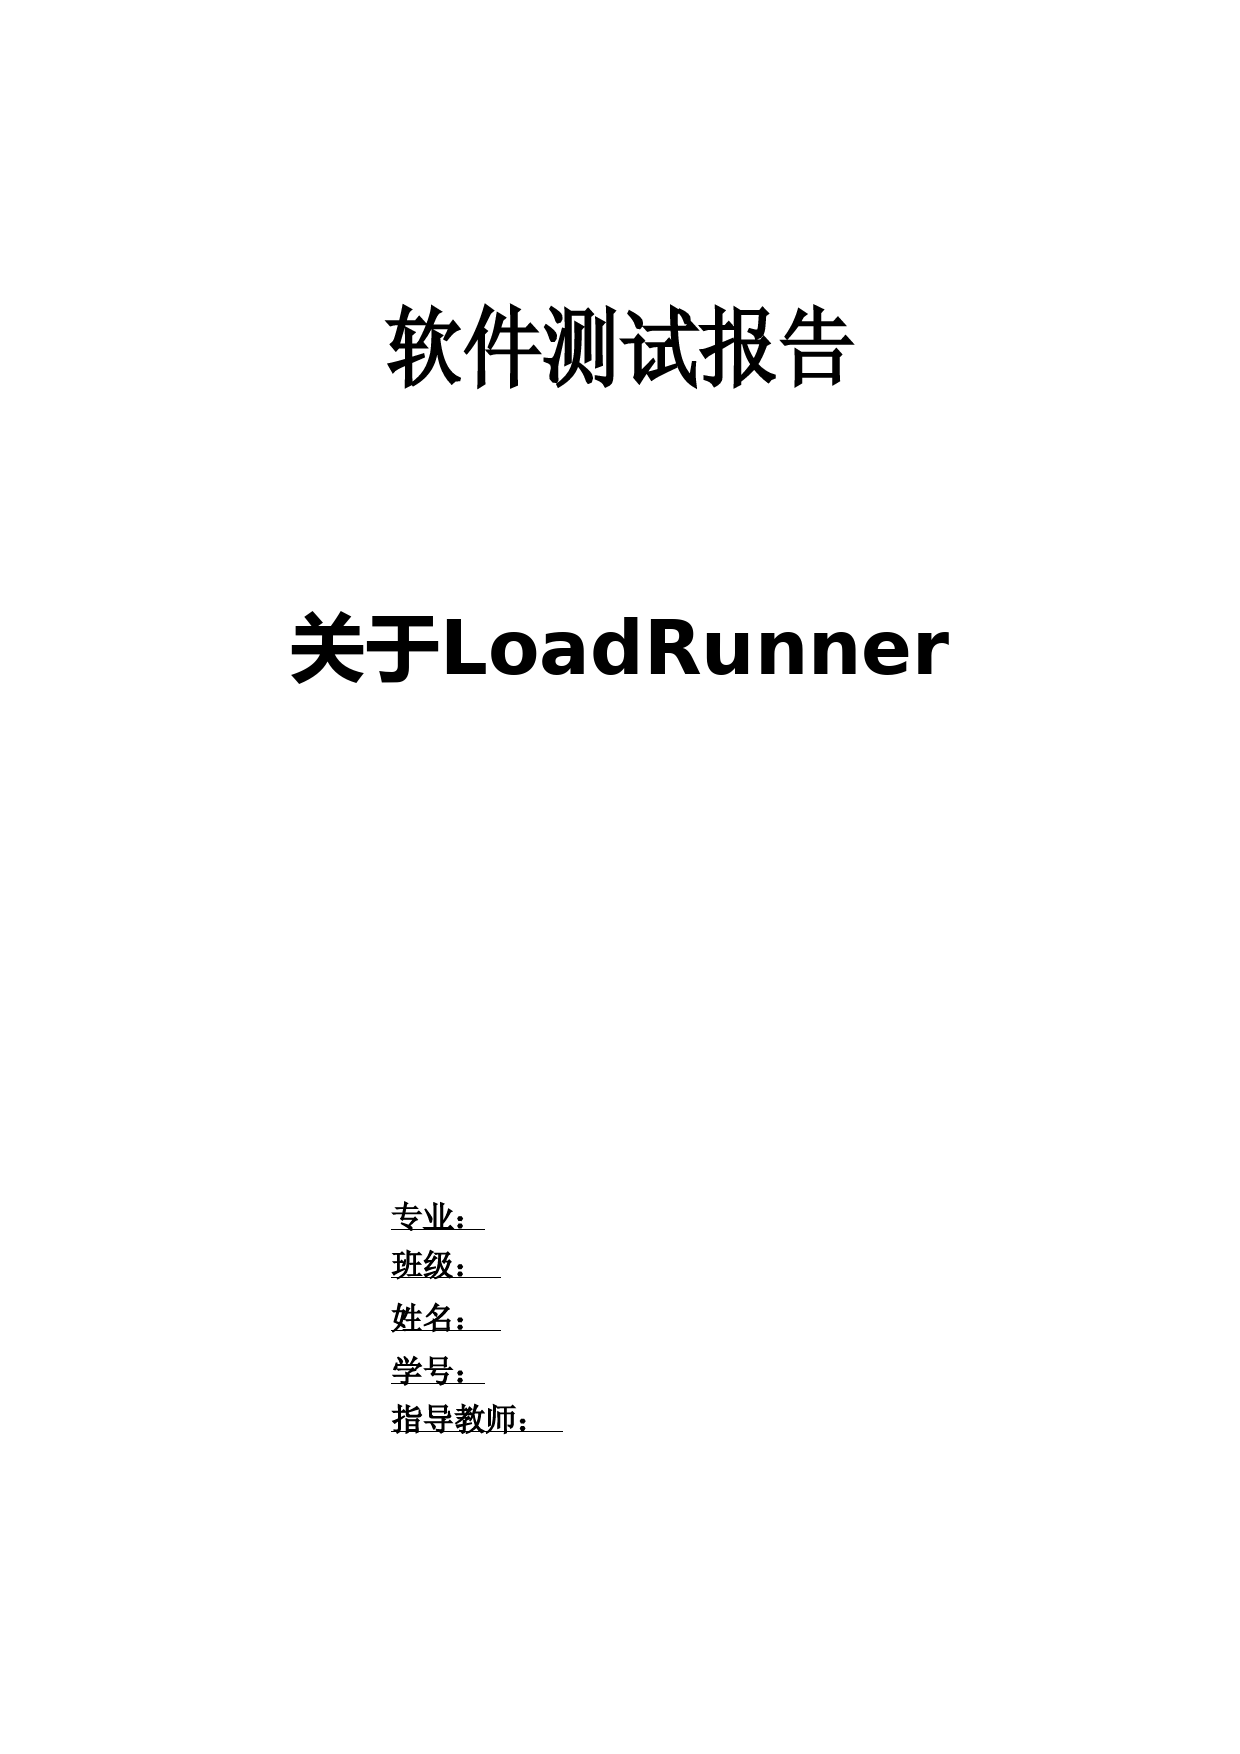 loadrunner初级教程